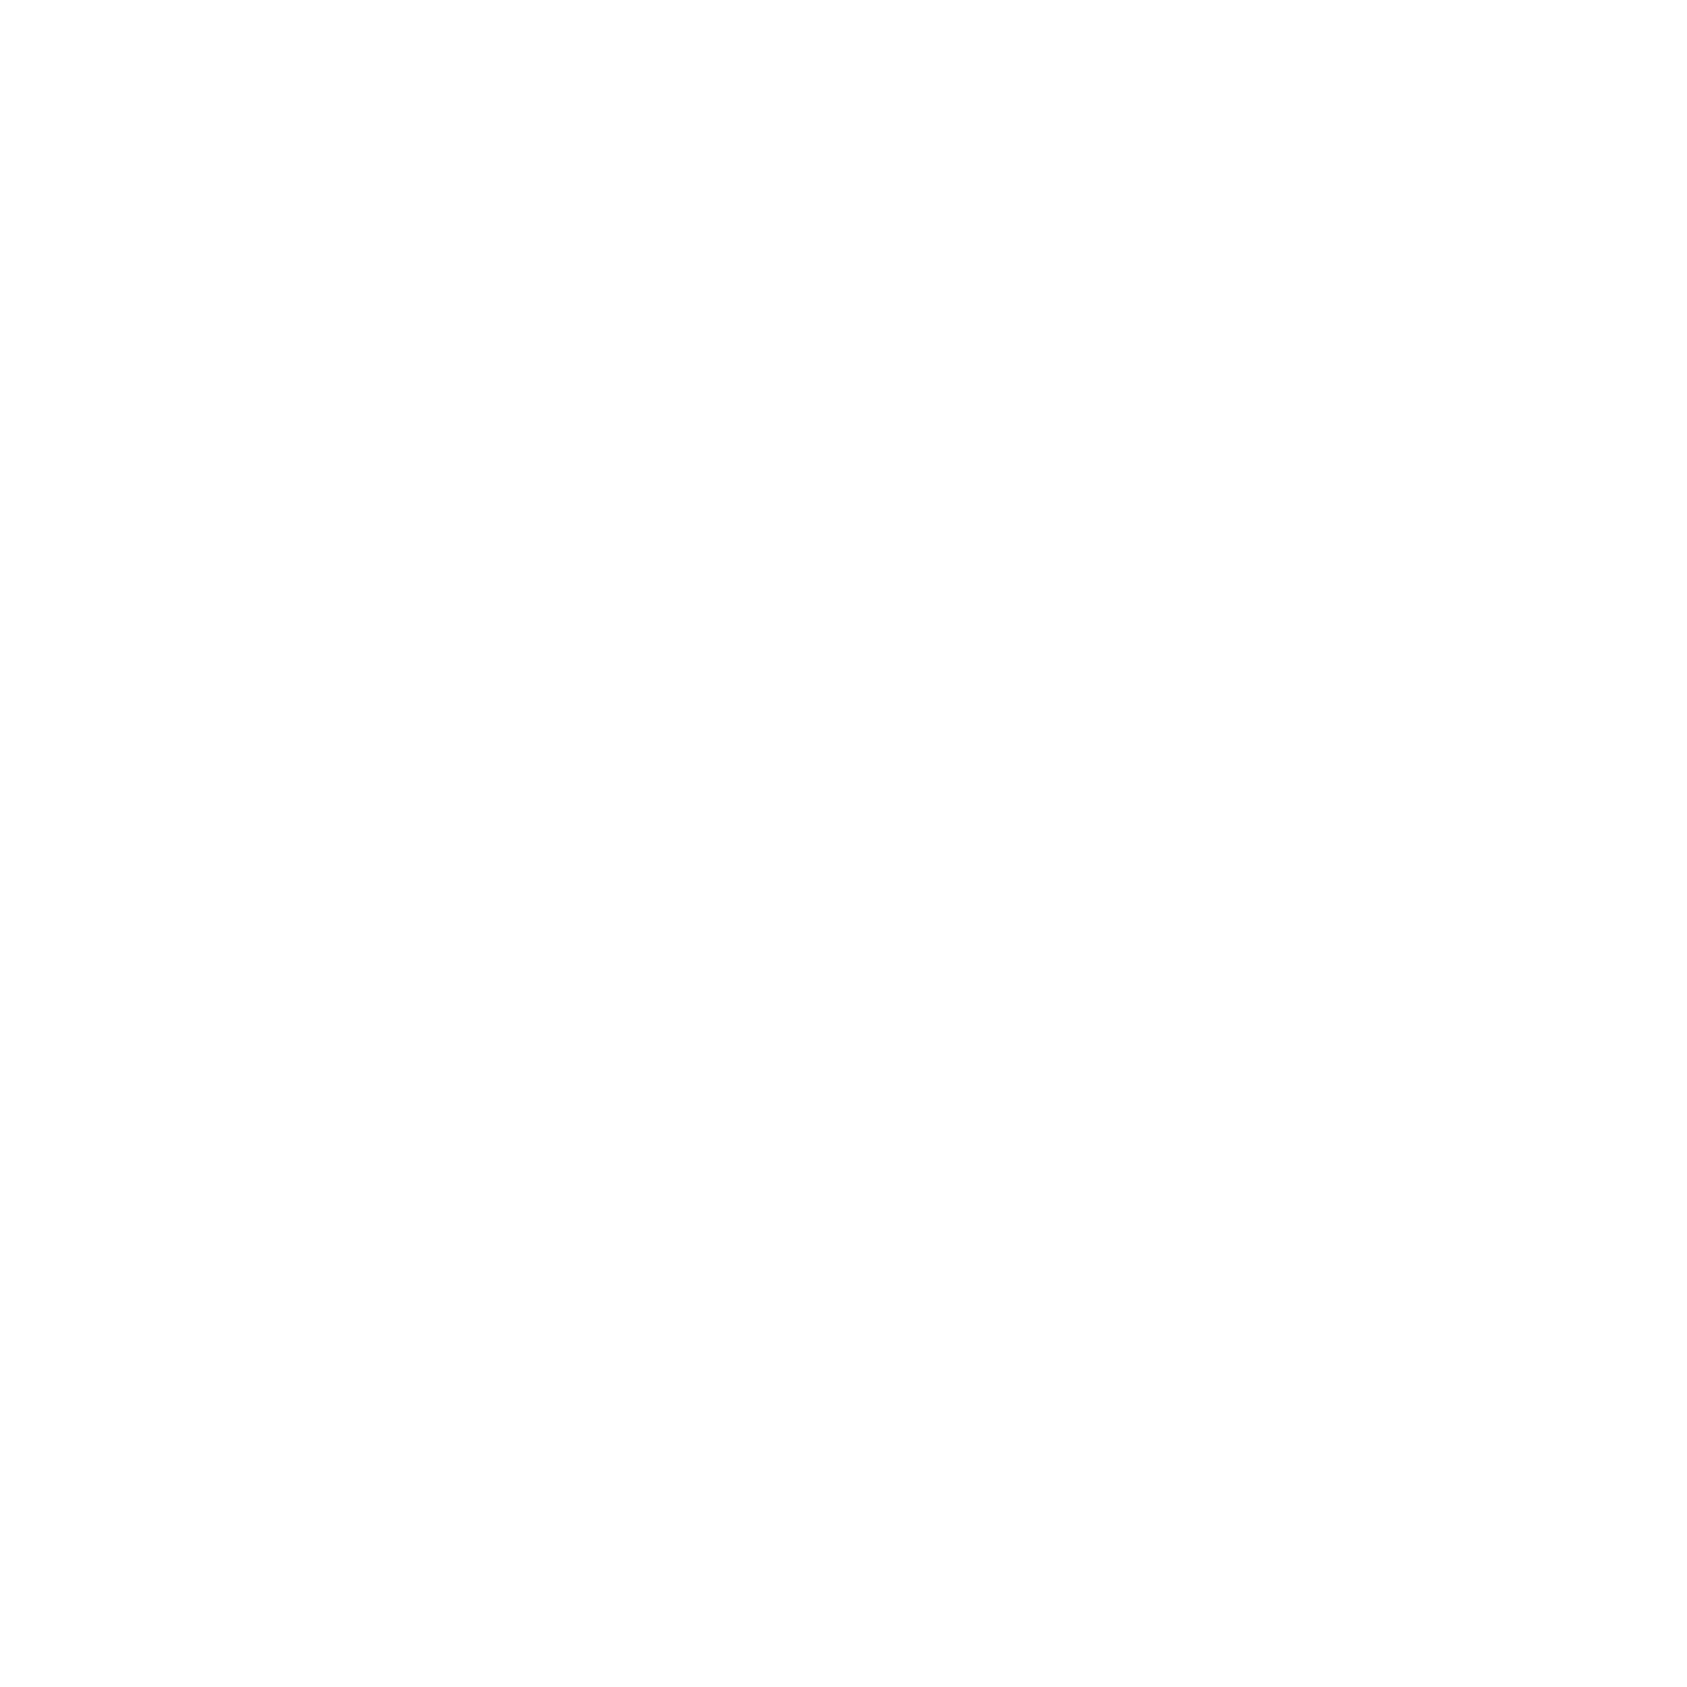 Twitterpagina van ontwerp, communicatie, webdesign, advies en reclamebureau Krekwerk